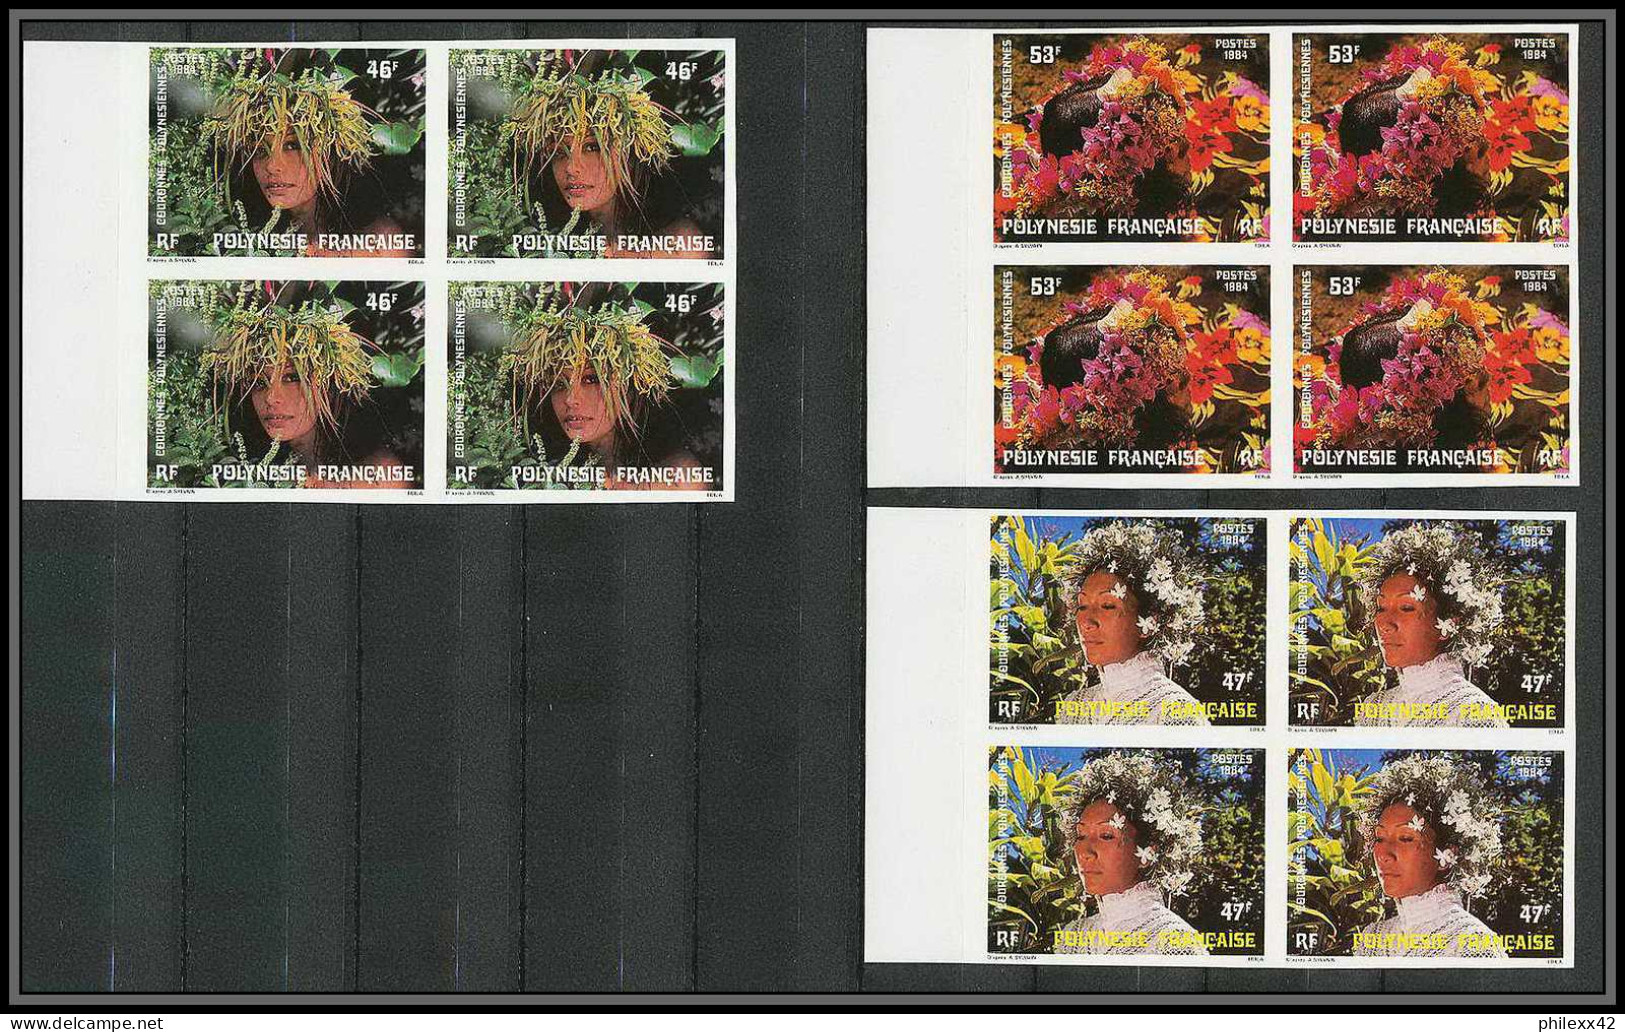 90804c Polynesie Polynesia N° 219/221 Couronnes Polynesiennes Fleurs Flowers Non Dentelé Imperf ** MNH Cote 88 Bloc 4 - Non Dentelés, épreuves & Variétés